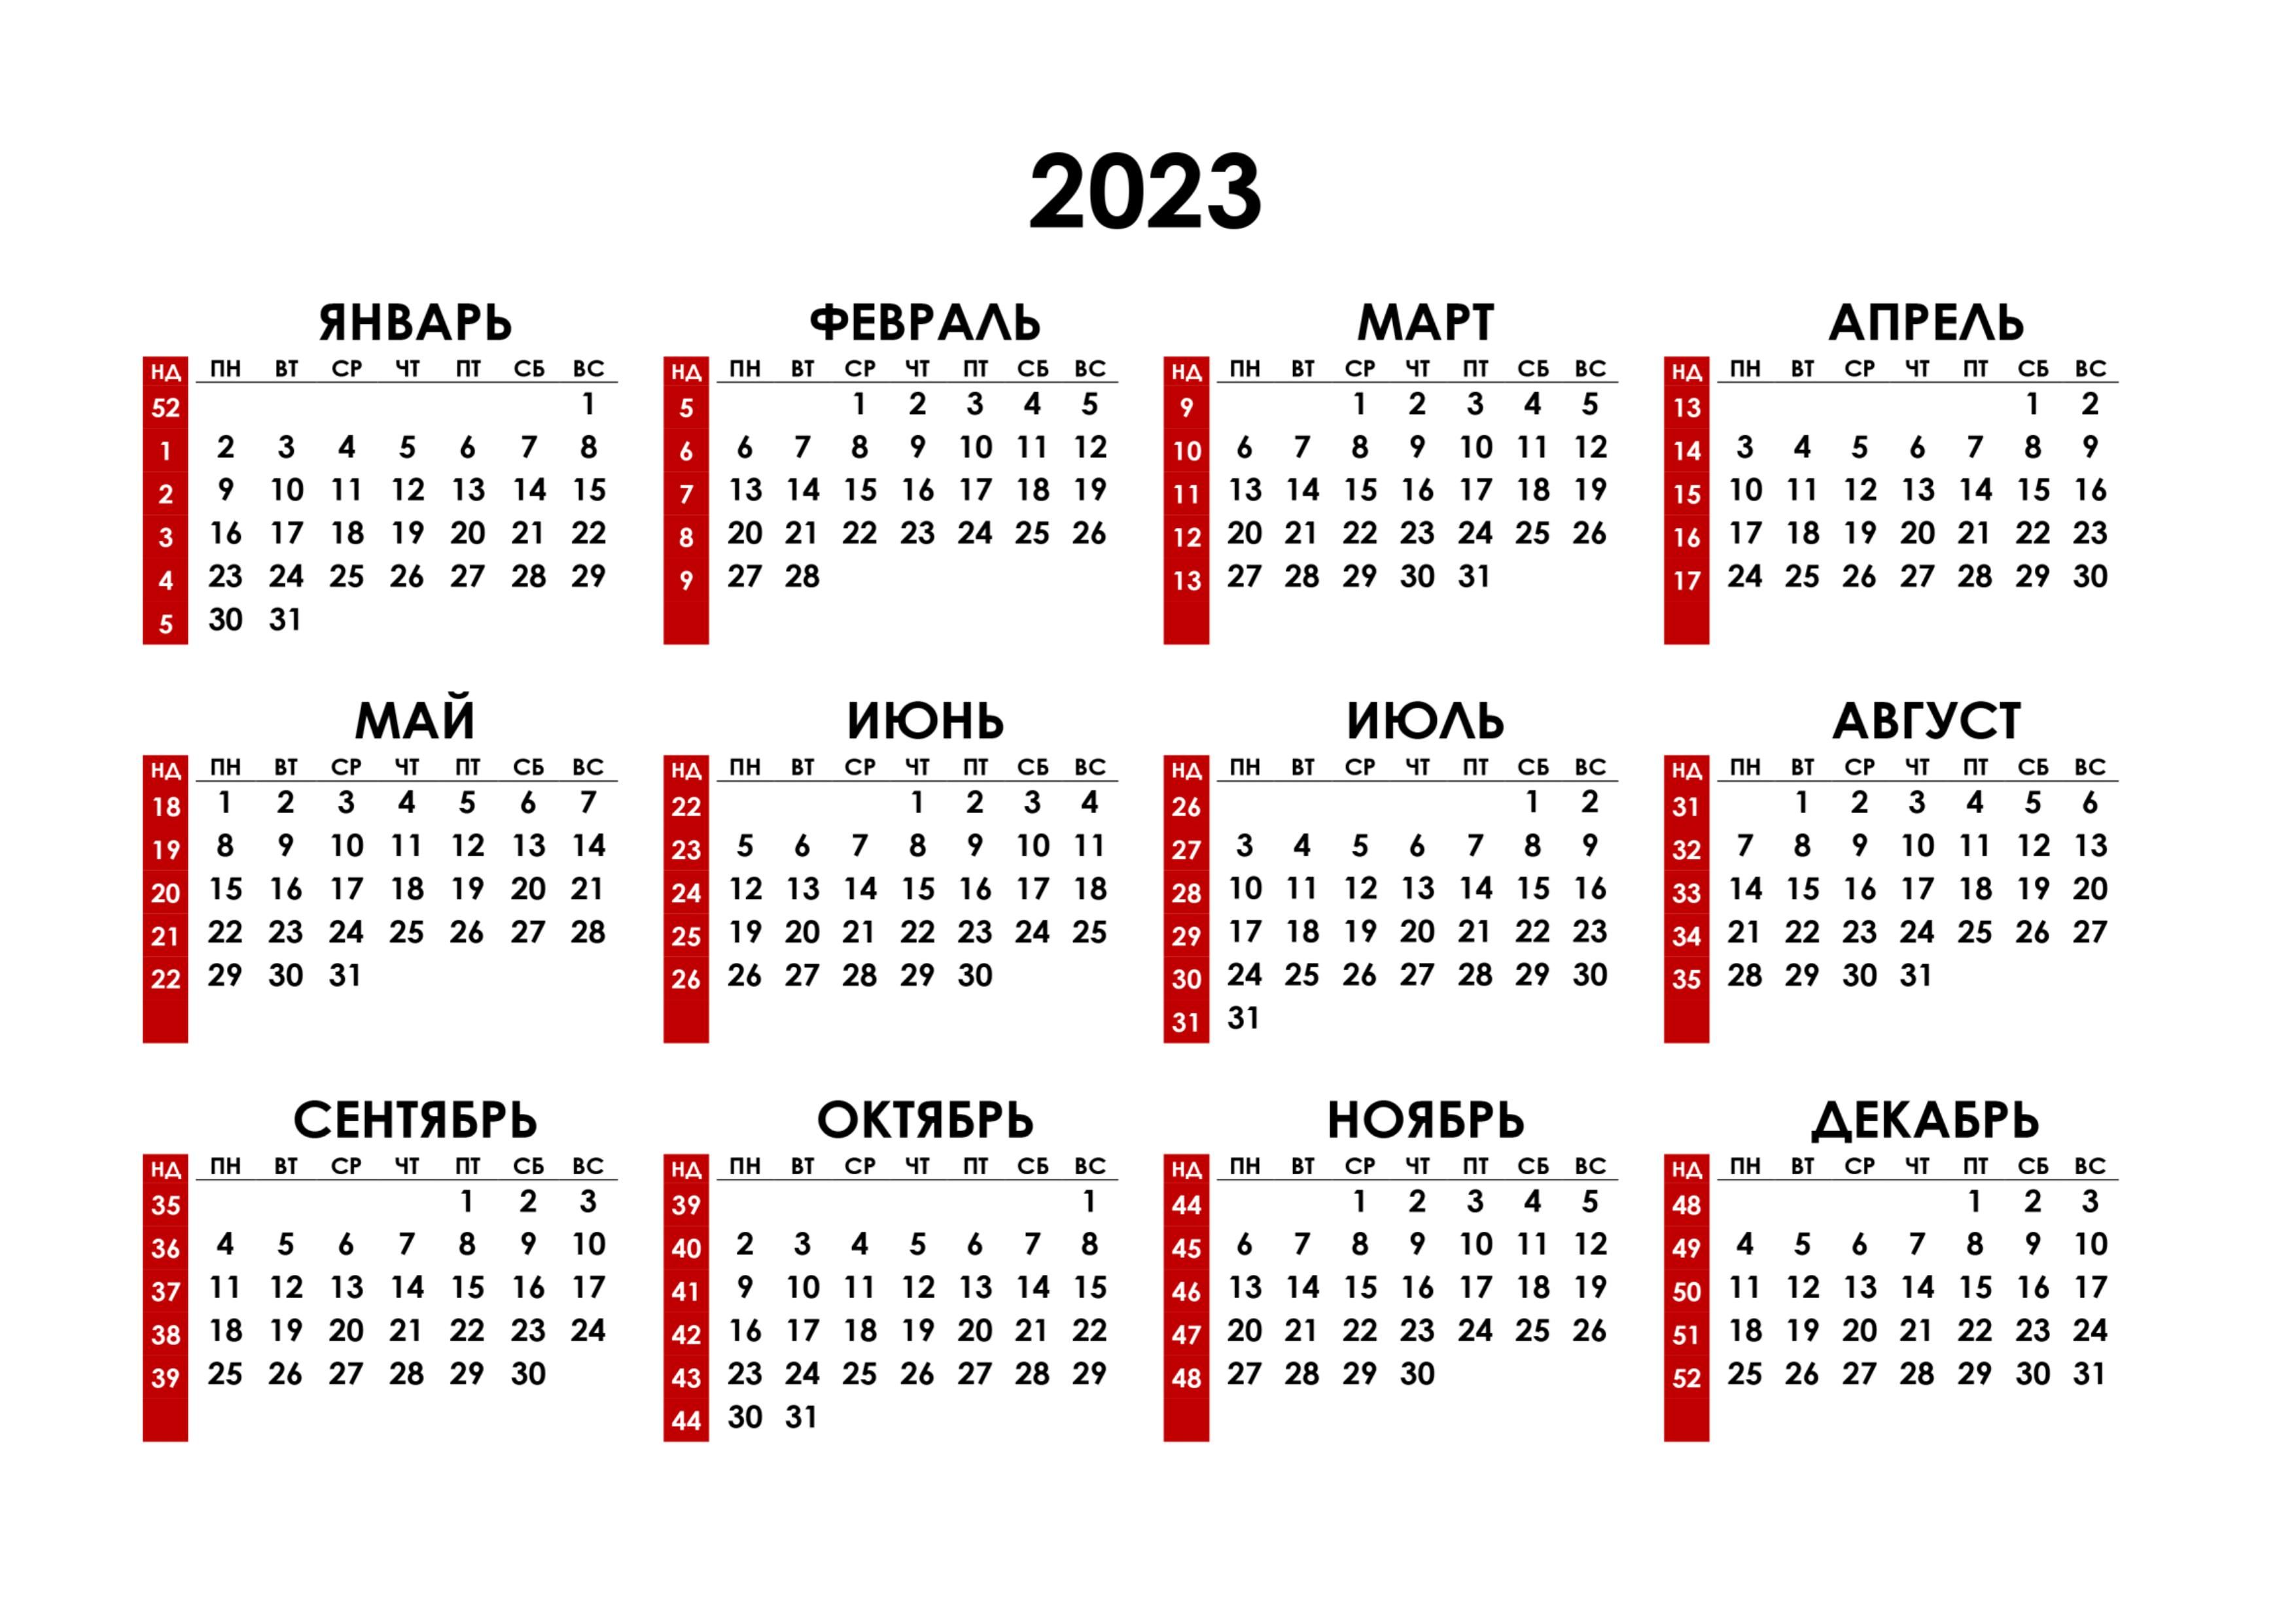 Первое полугодие 2023. Календарь на 2023 год. Календарь с номерами недель 2023. Календарь синомерами недель. Hrfktylfhm PF 2023 ujl.